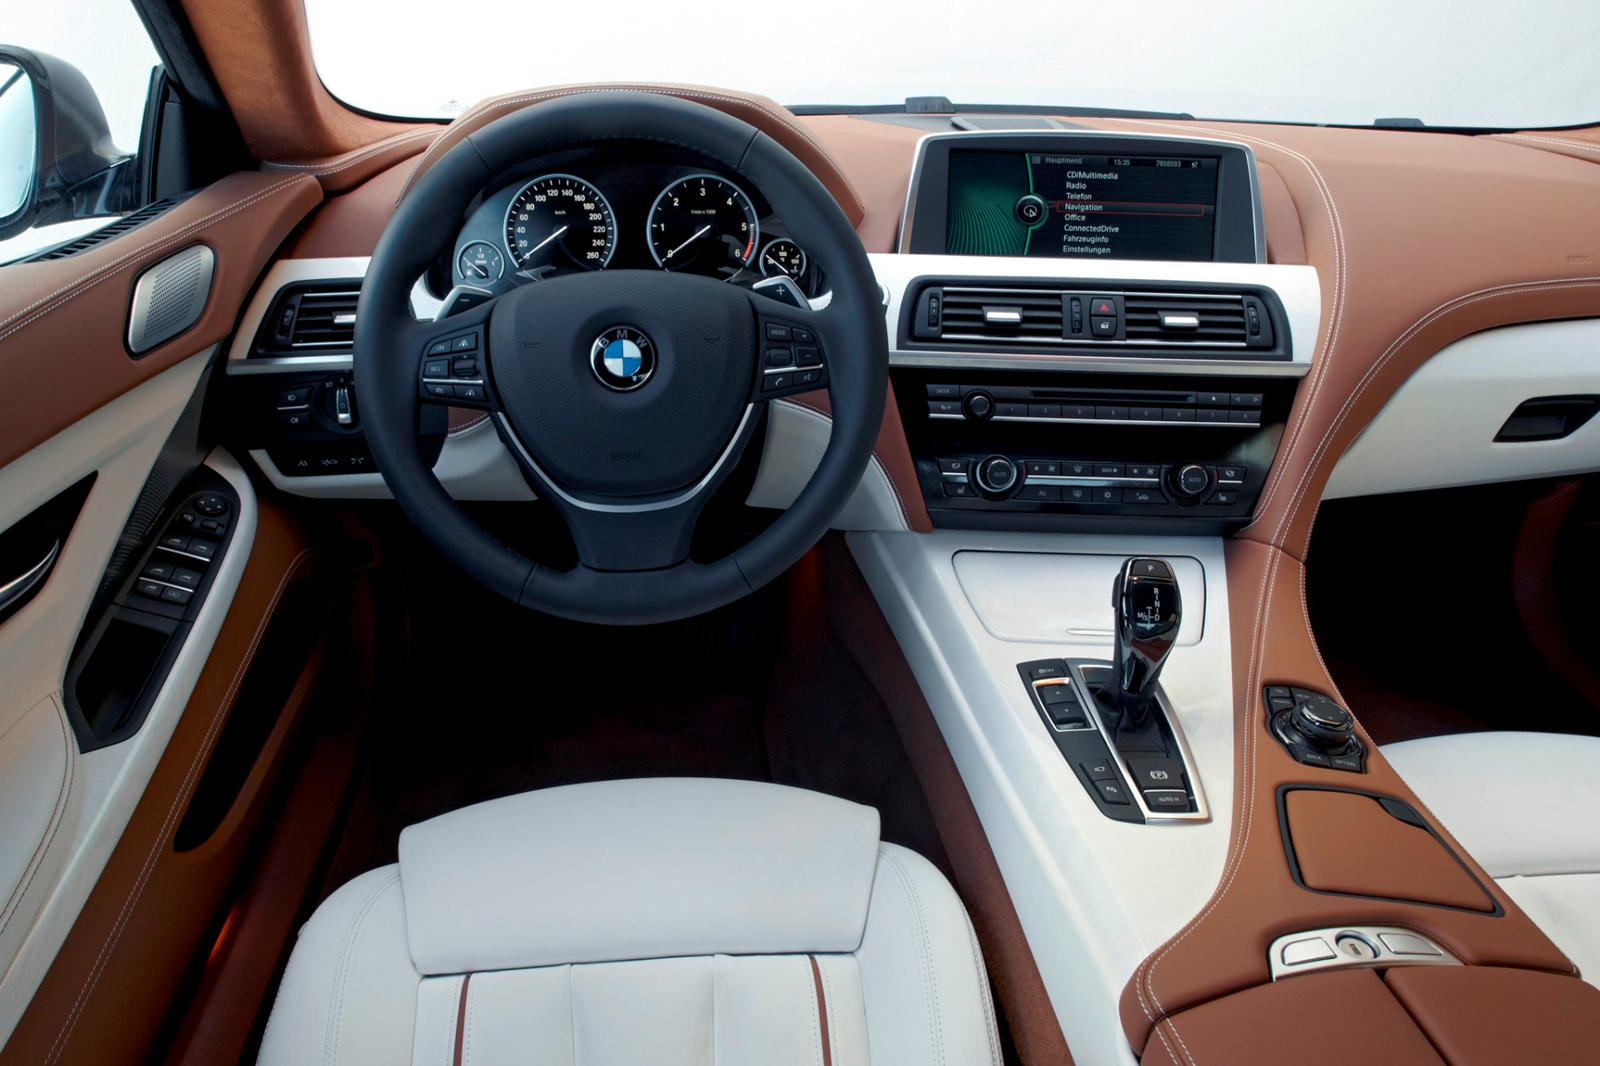 2013 BMW 6 Series Gran Coupe Interior Photos | CarBuzz